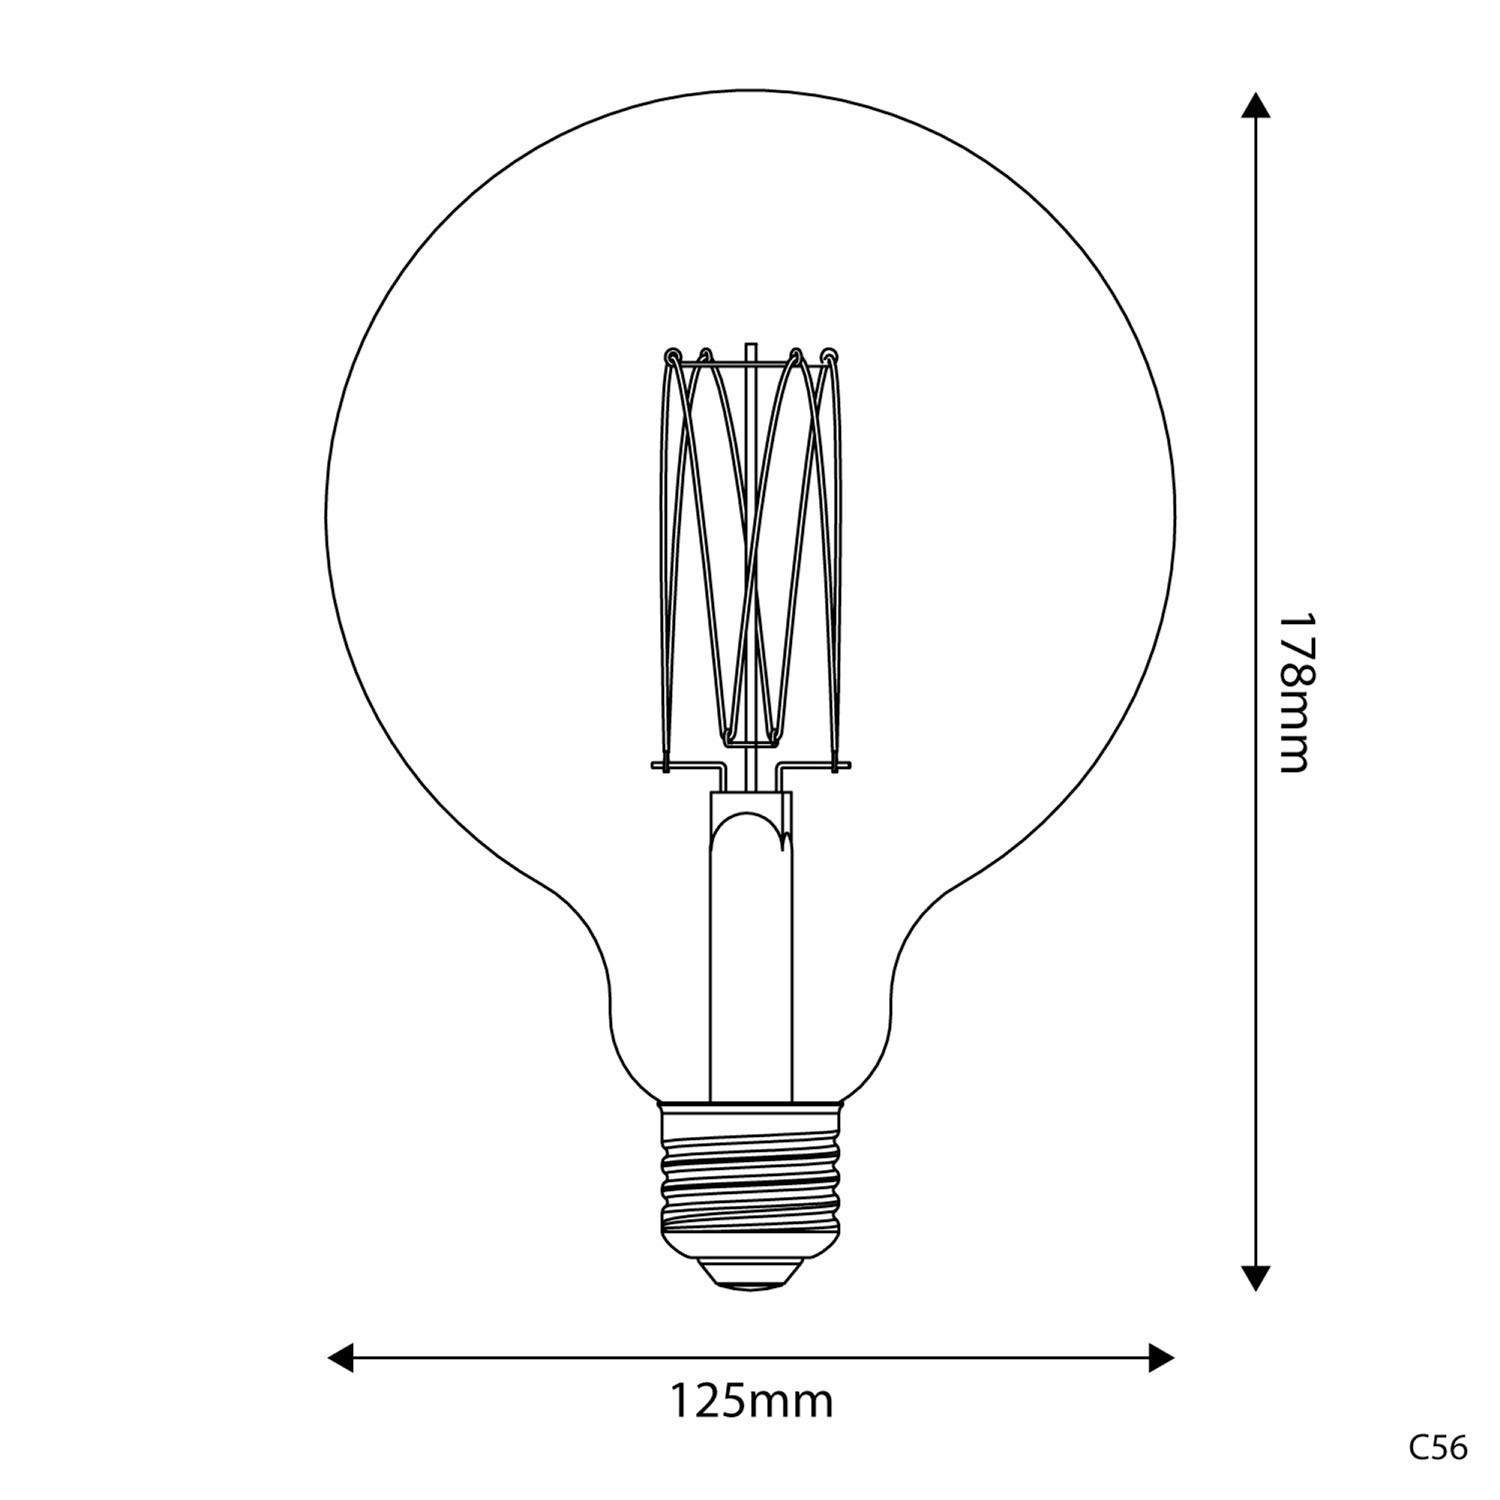 Ampoule Dorée LED Carbon Line Filament Cage Globe G125 7W 640Lm E27 2700K Dimmable - C56